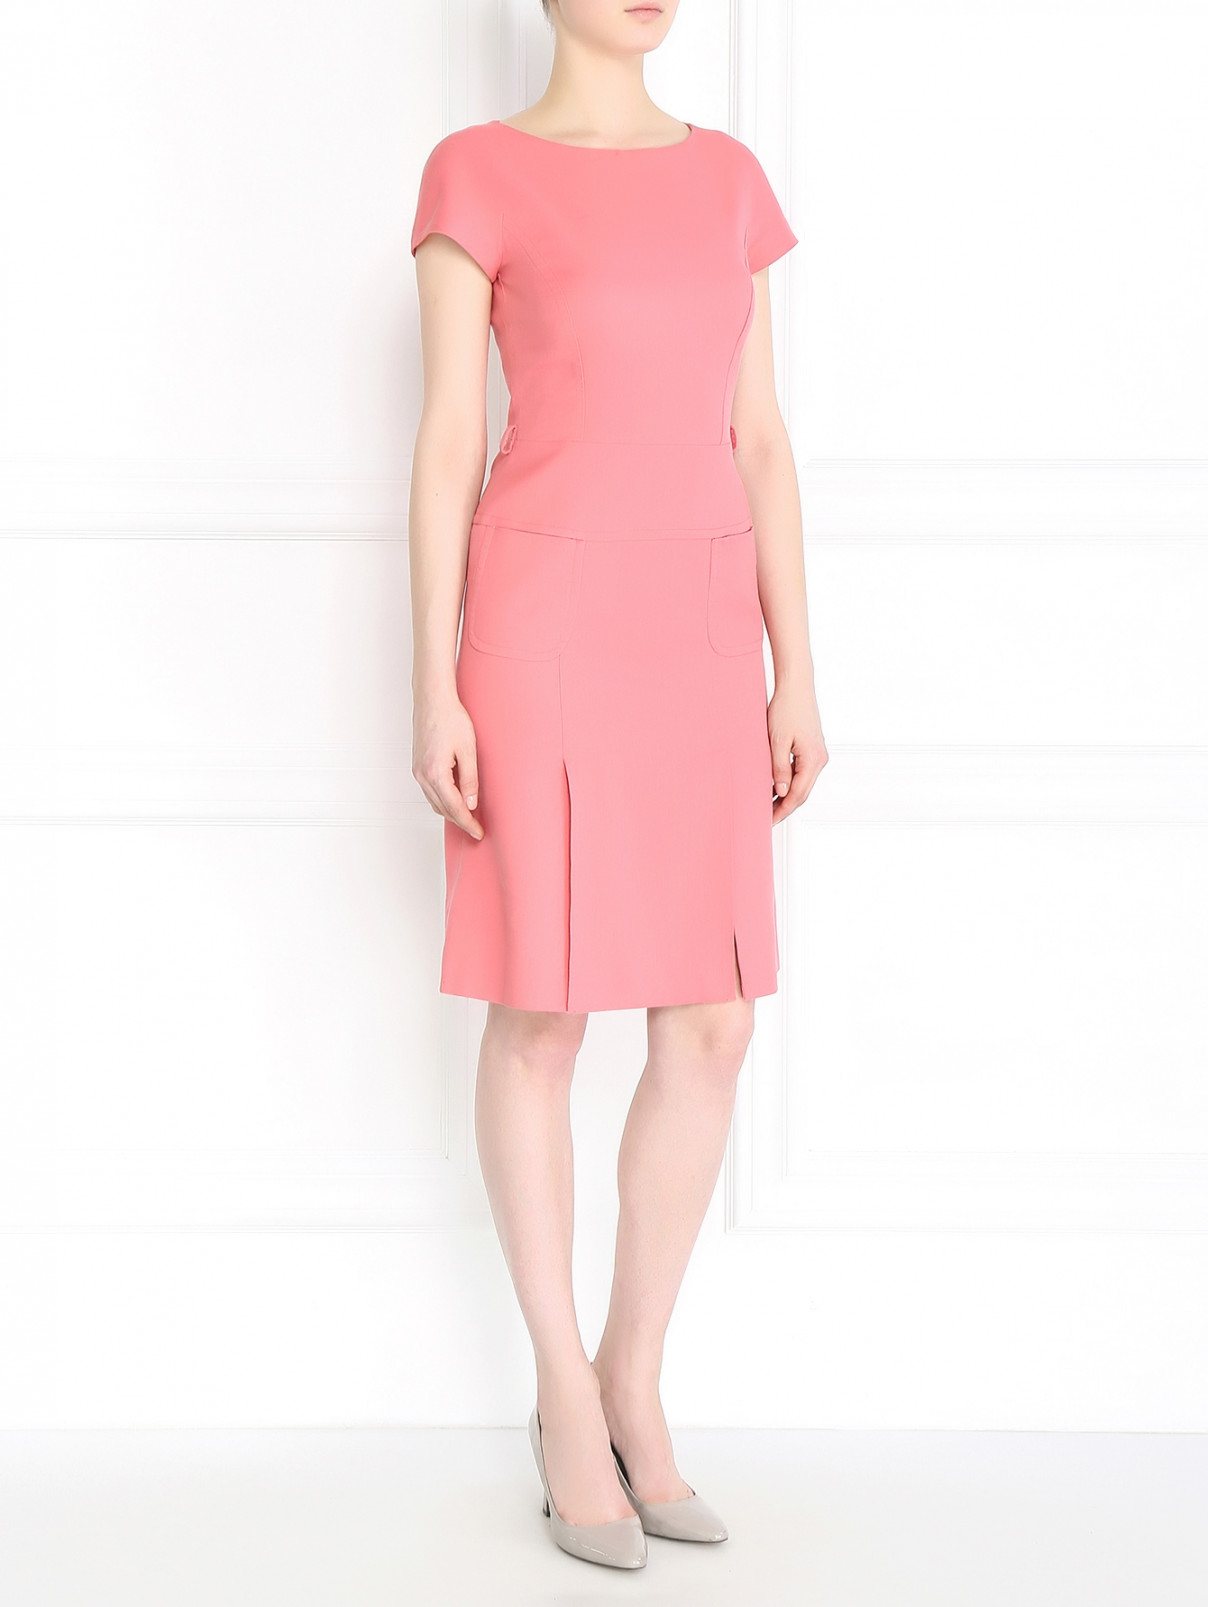 Платье-футляр из хлопка с накладными карманами Alberta Ferretti  –  Модель Общий вид  – Цвет:  Розовый